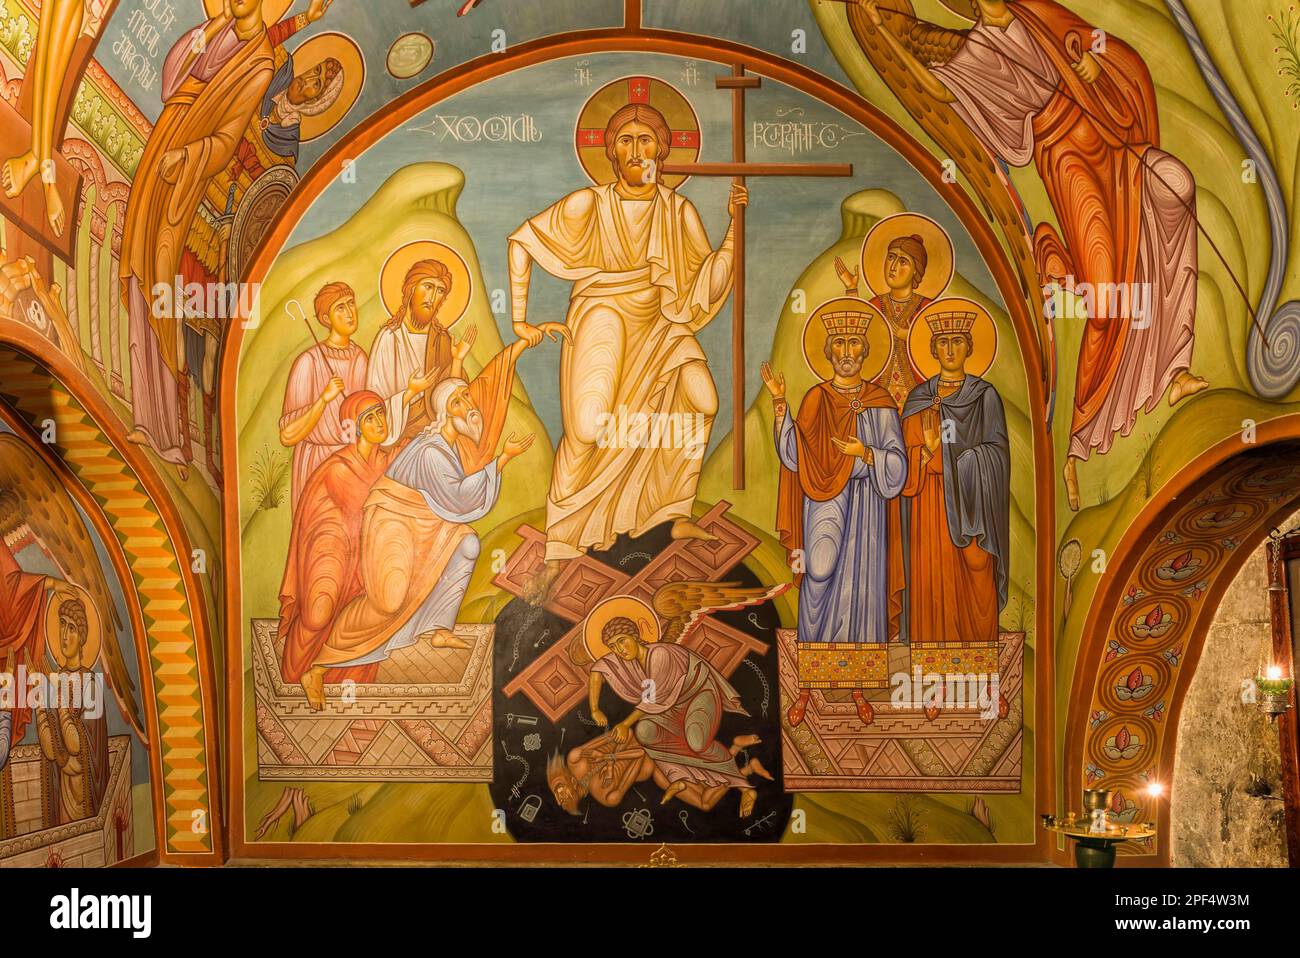 Cathédrale de Sioni, fresques intérieures avec des scènes bibliques, Tbilissi, Caucase, Moyen-Orient, Géorgie Banque D'Images